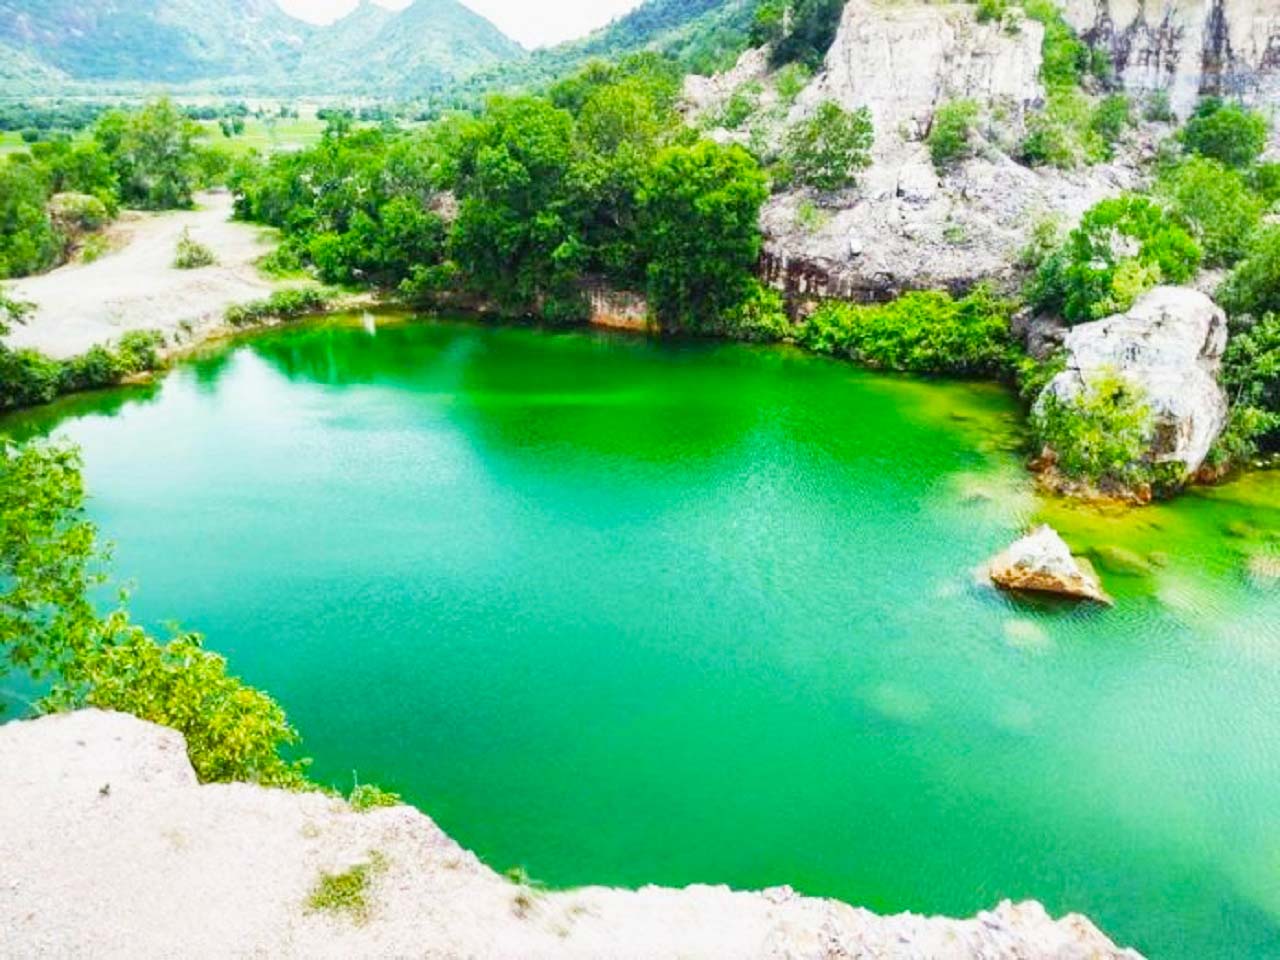 Hồ Tà Pạ - Khám phá "Tuyệt tình cốc" sống ảo cực đẹp ở An Giang (2021)